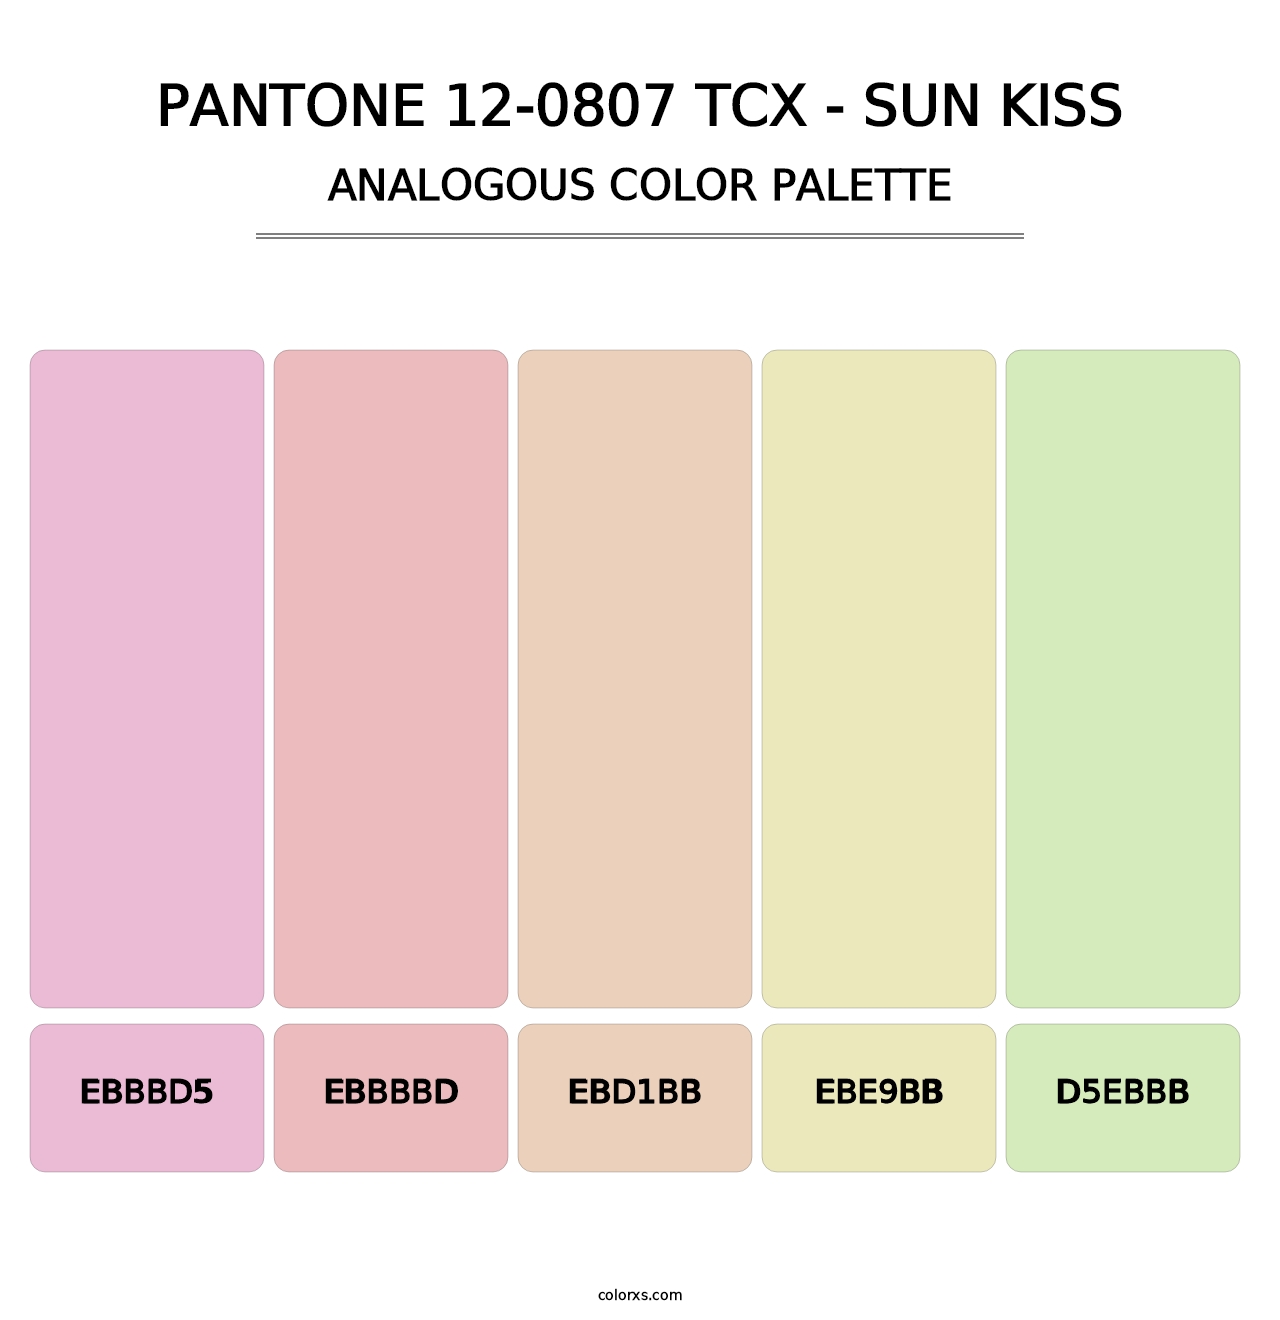 PANTONE 12-0807 TCX - Sun Kiss - Analogous Color Palette